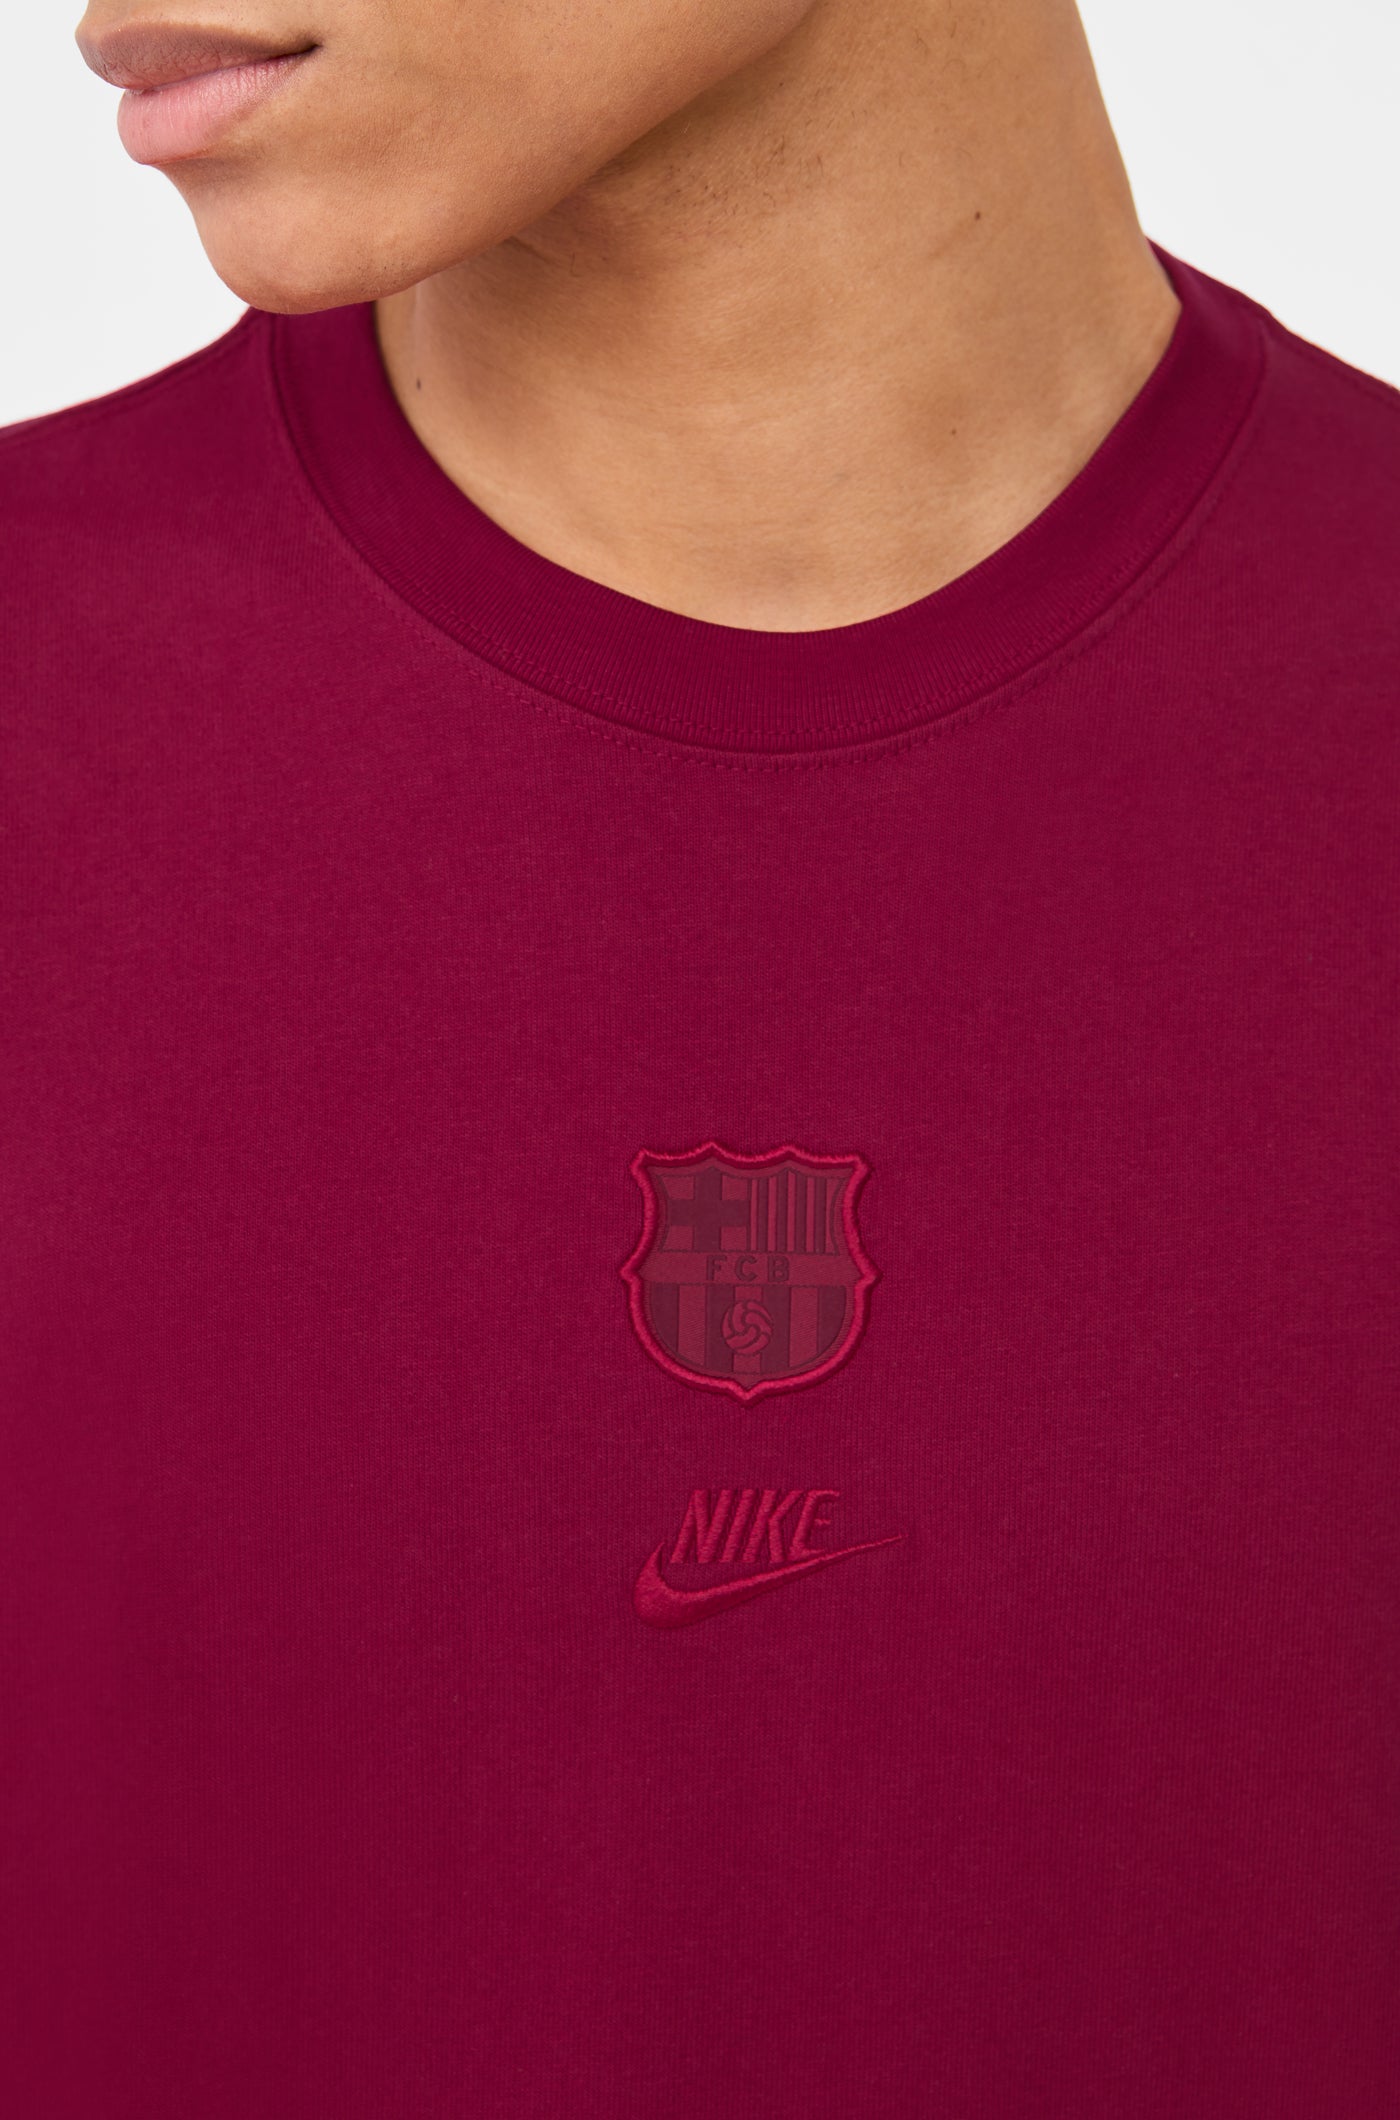 T-Shirt mit Wappen Rotes von Barça Nike